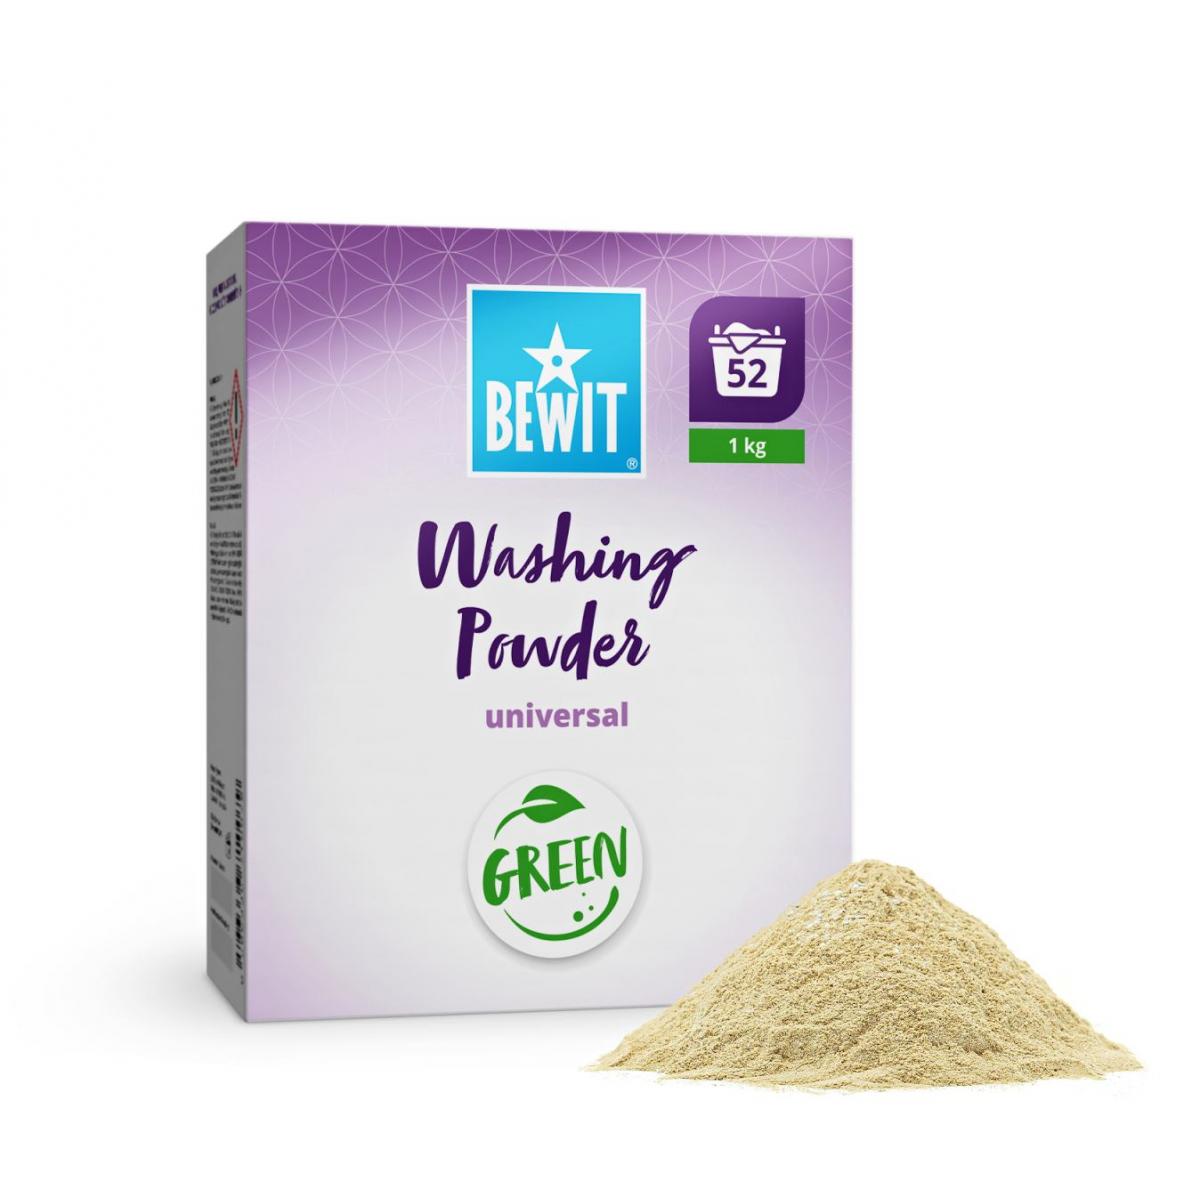 Bewit Washing powder universal 1kg